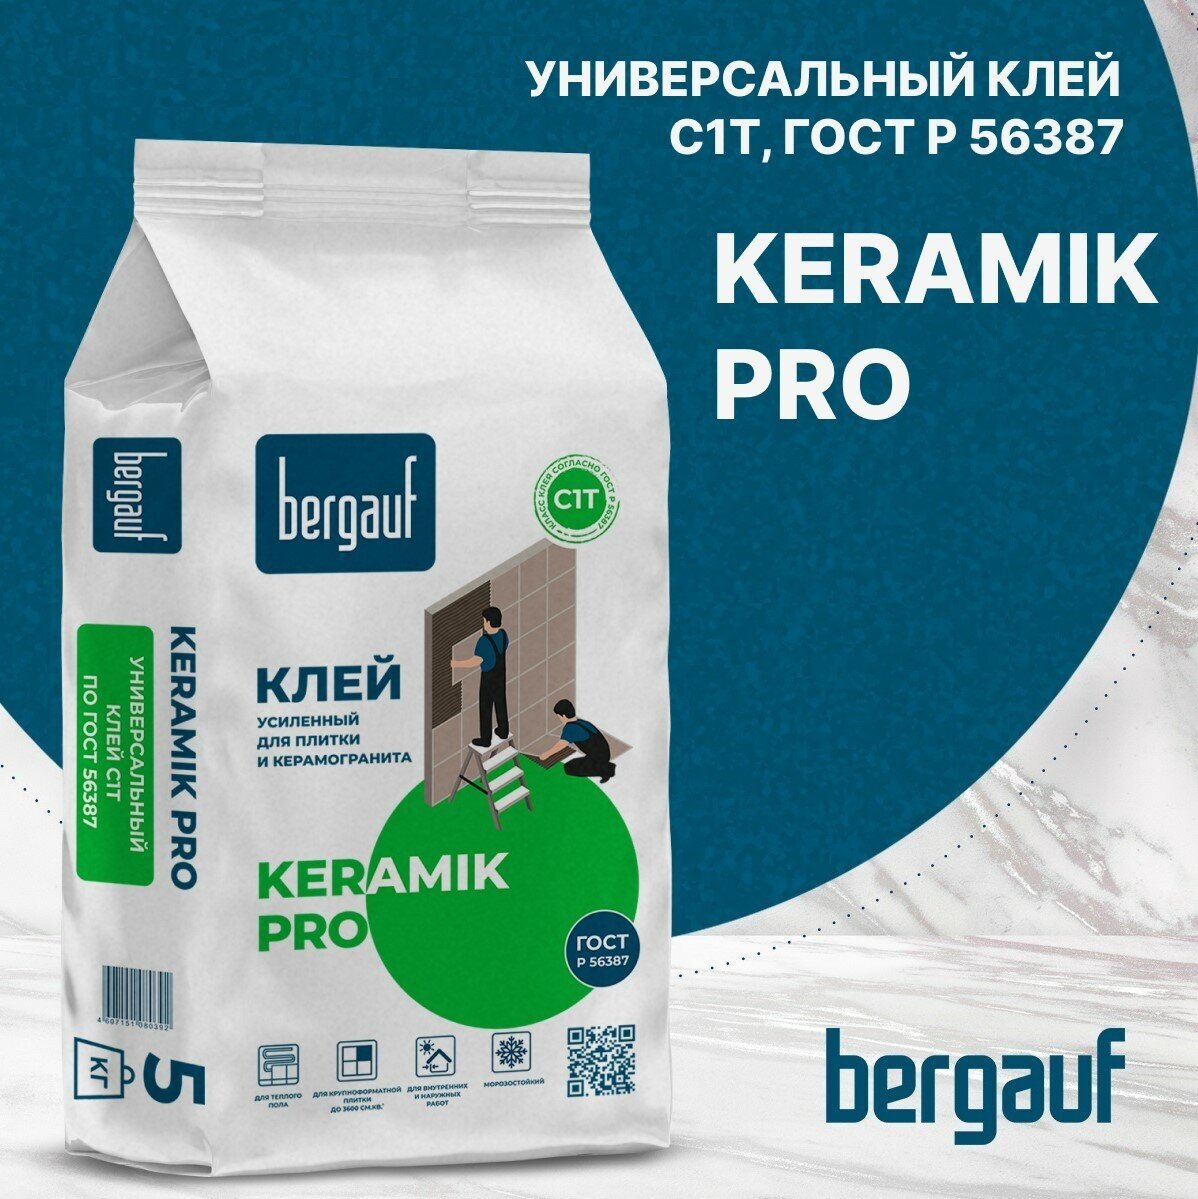 Bergauf Клей для плитки и керамогранита BERGAUF KERAMIK PRO (С1), 5кг